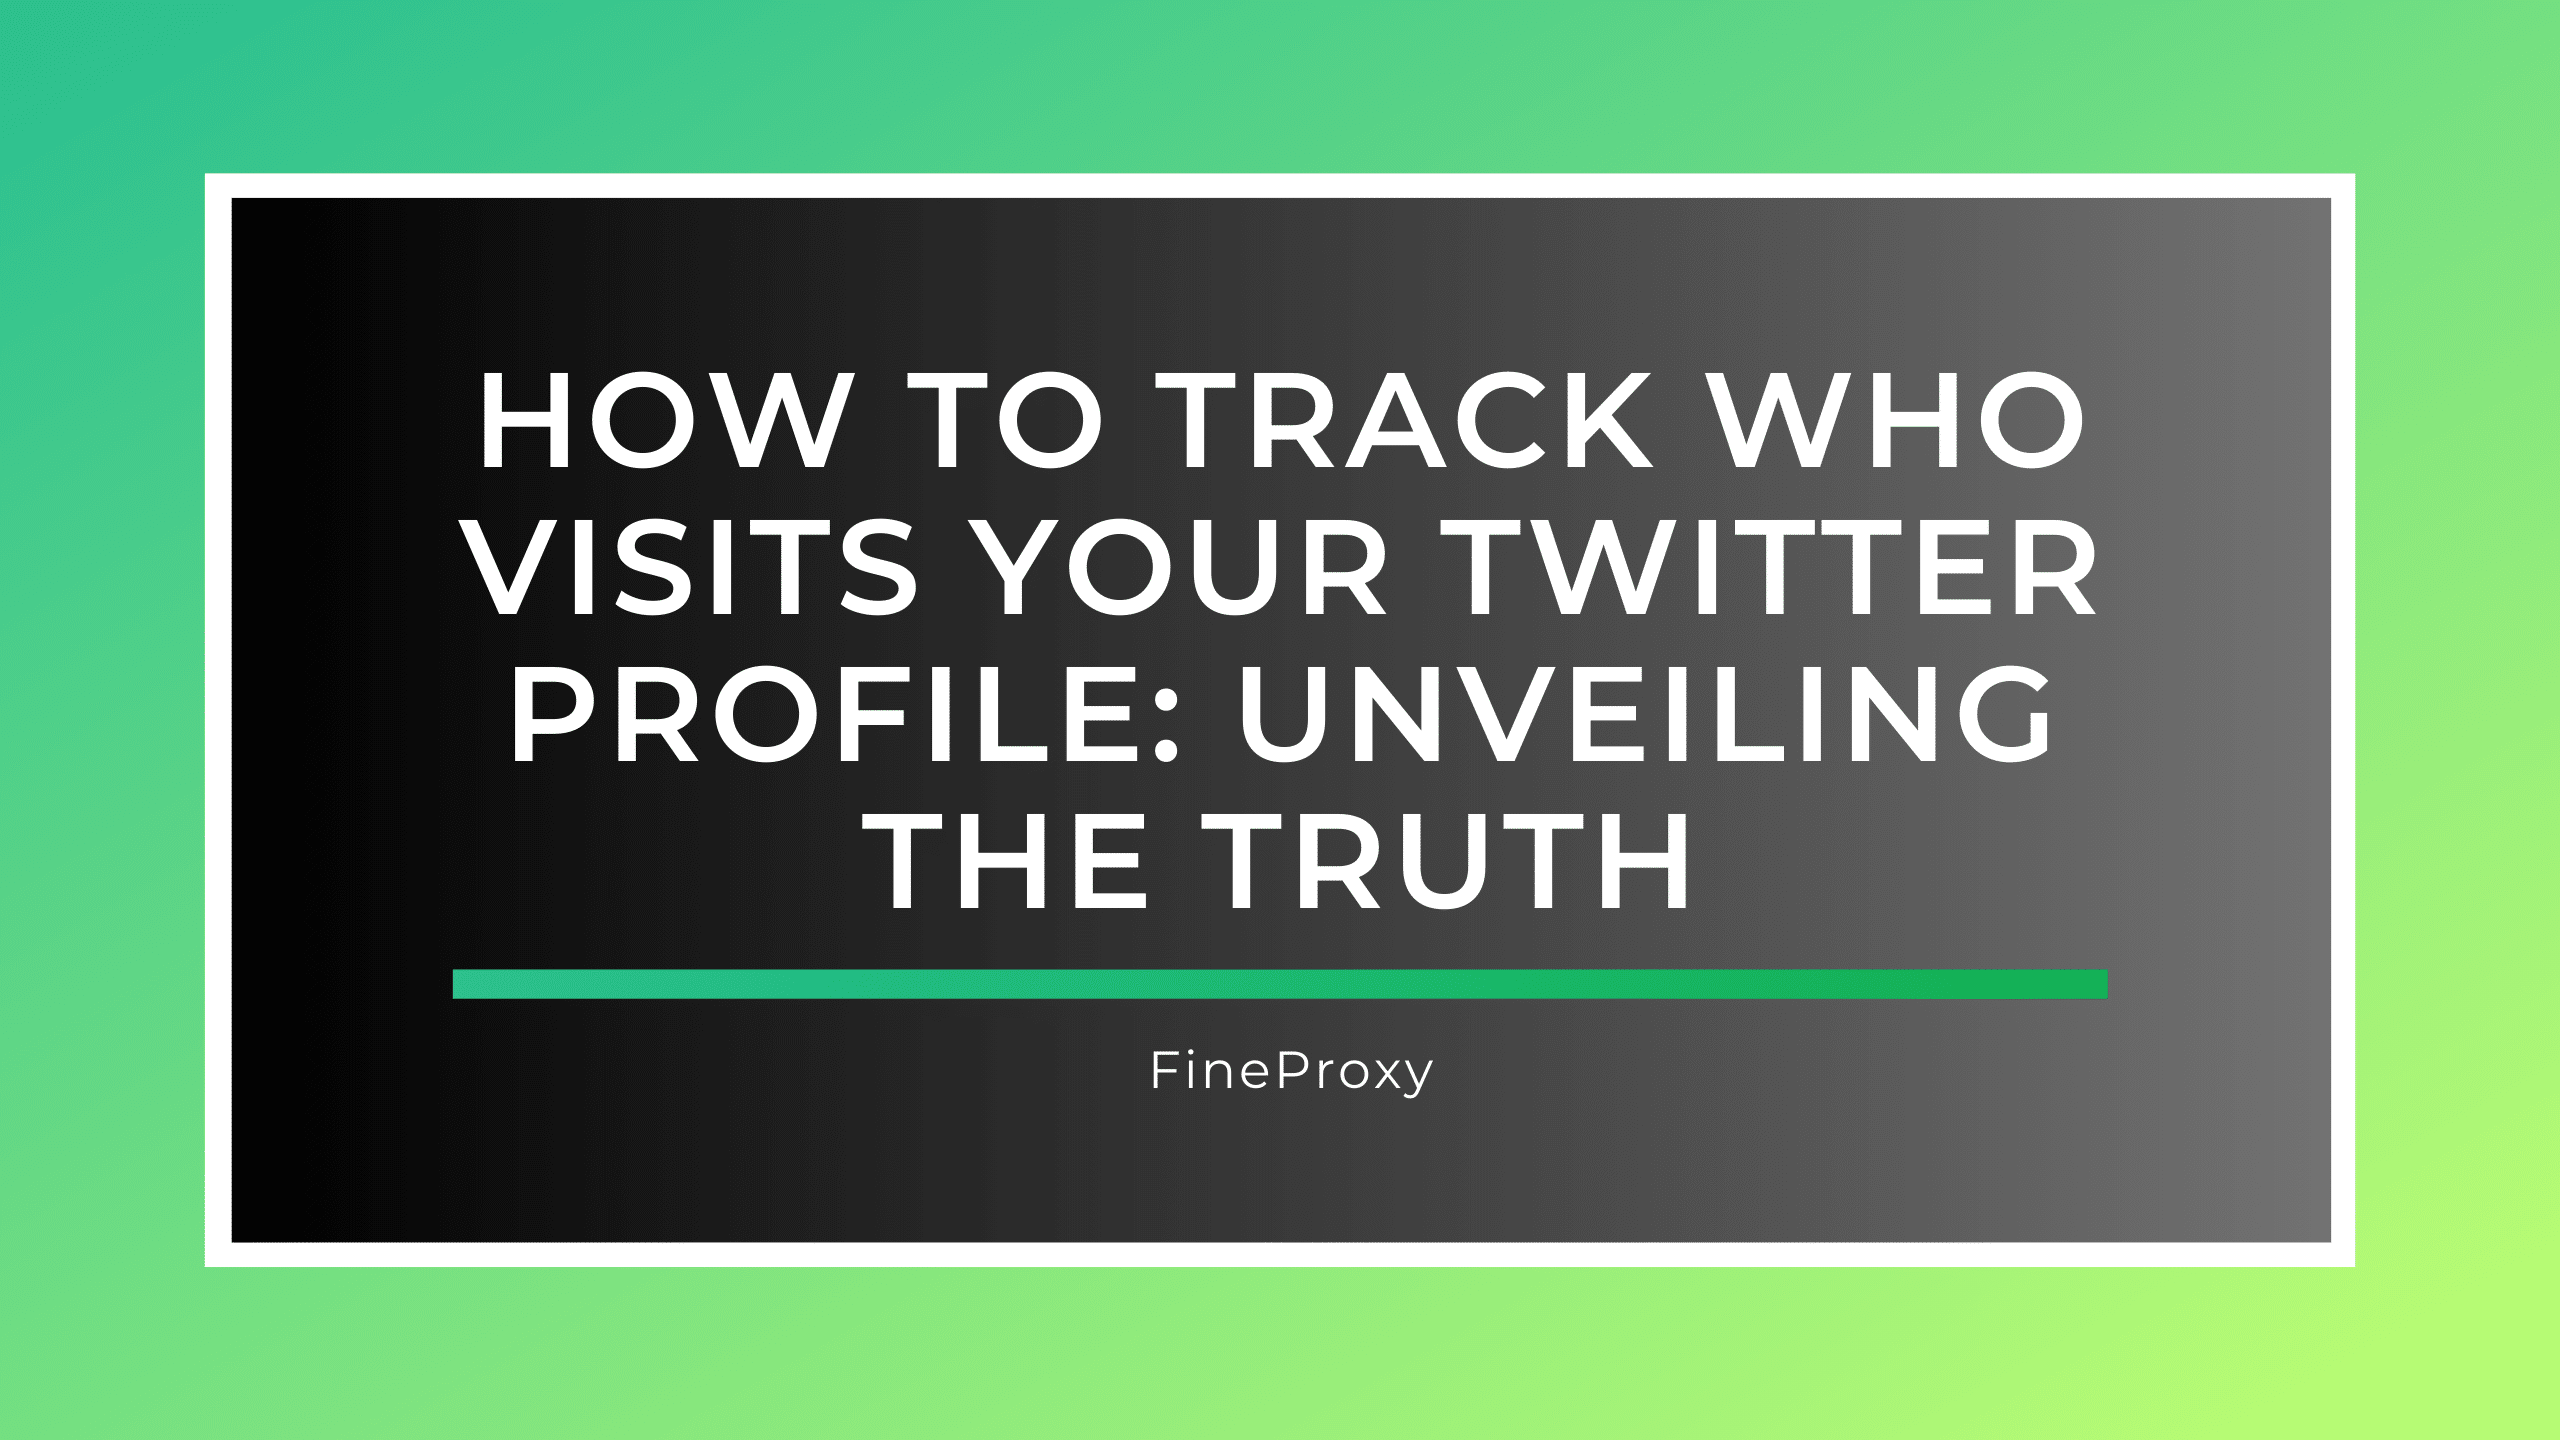 트위터 프로필 방문자를 추적하는 방법: 진실 밝히기